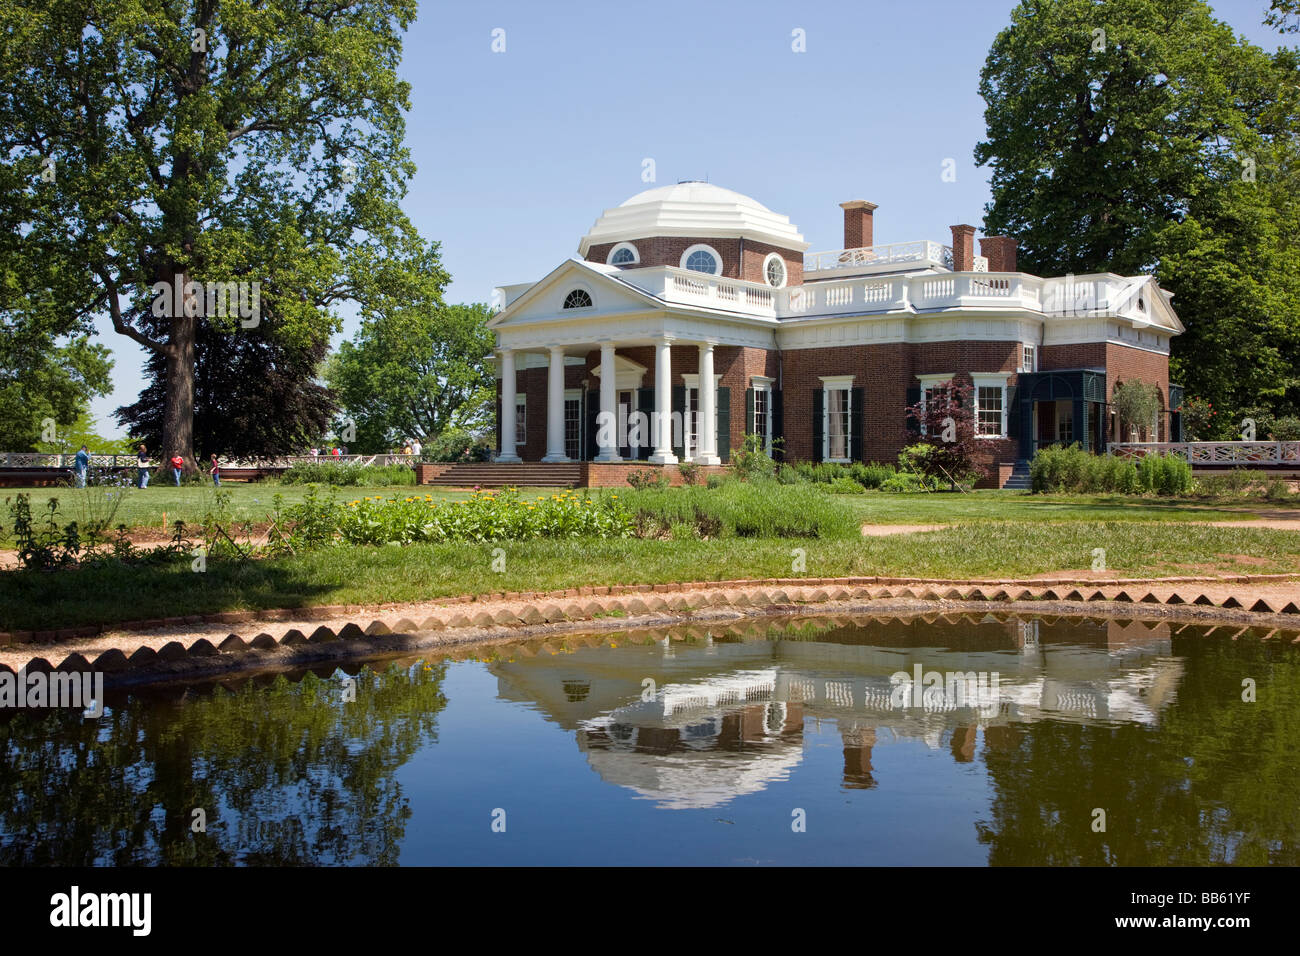 Monticello Thomas Jefferson s ex casa e piantagione nei pressi di Charlottesville in Virginia USA Foto Stock